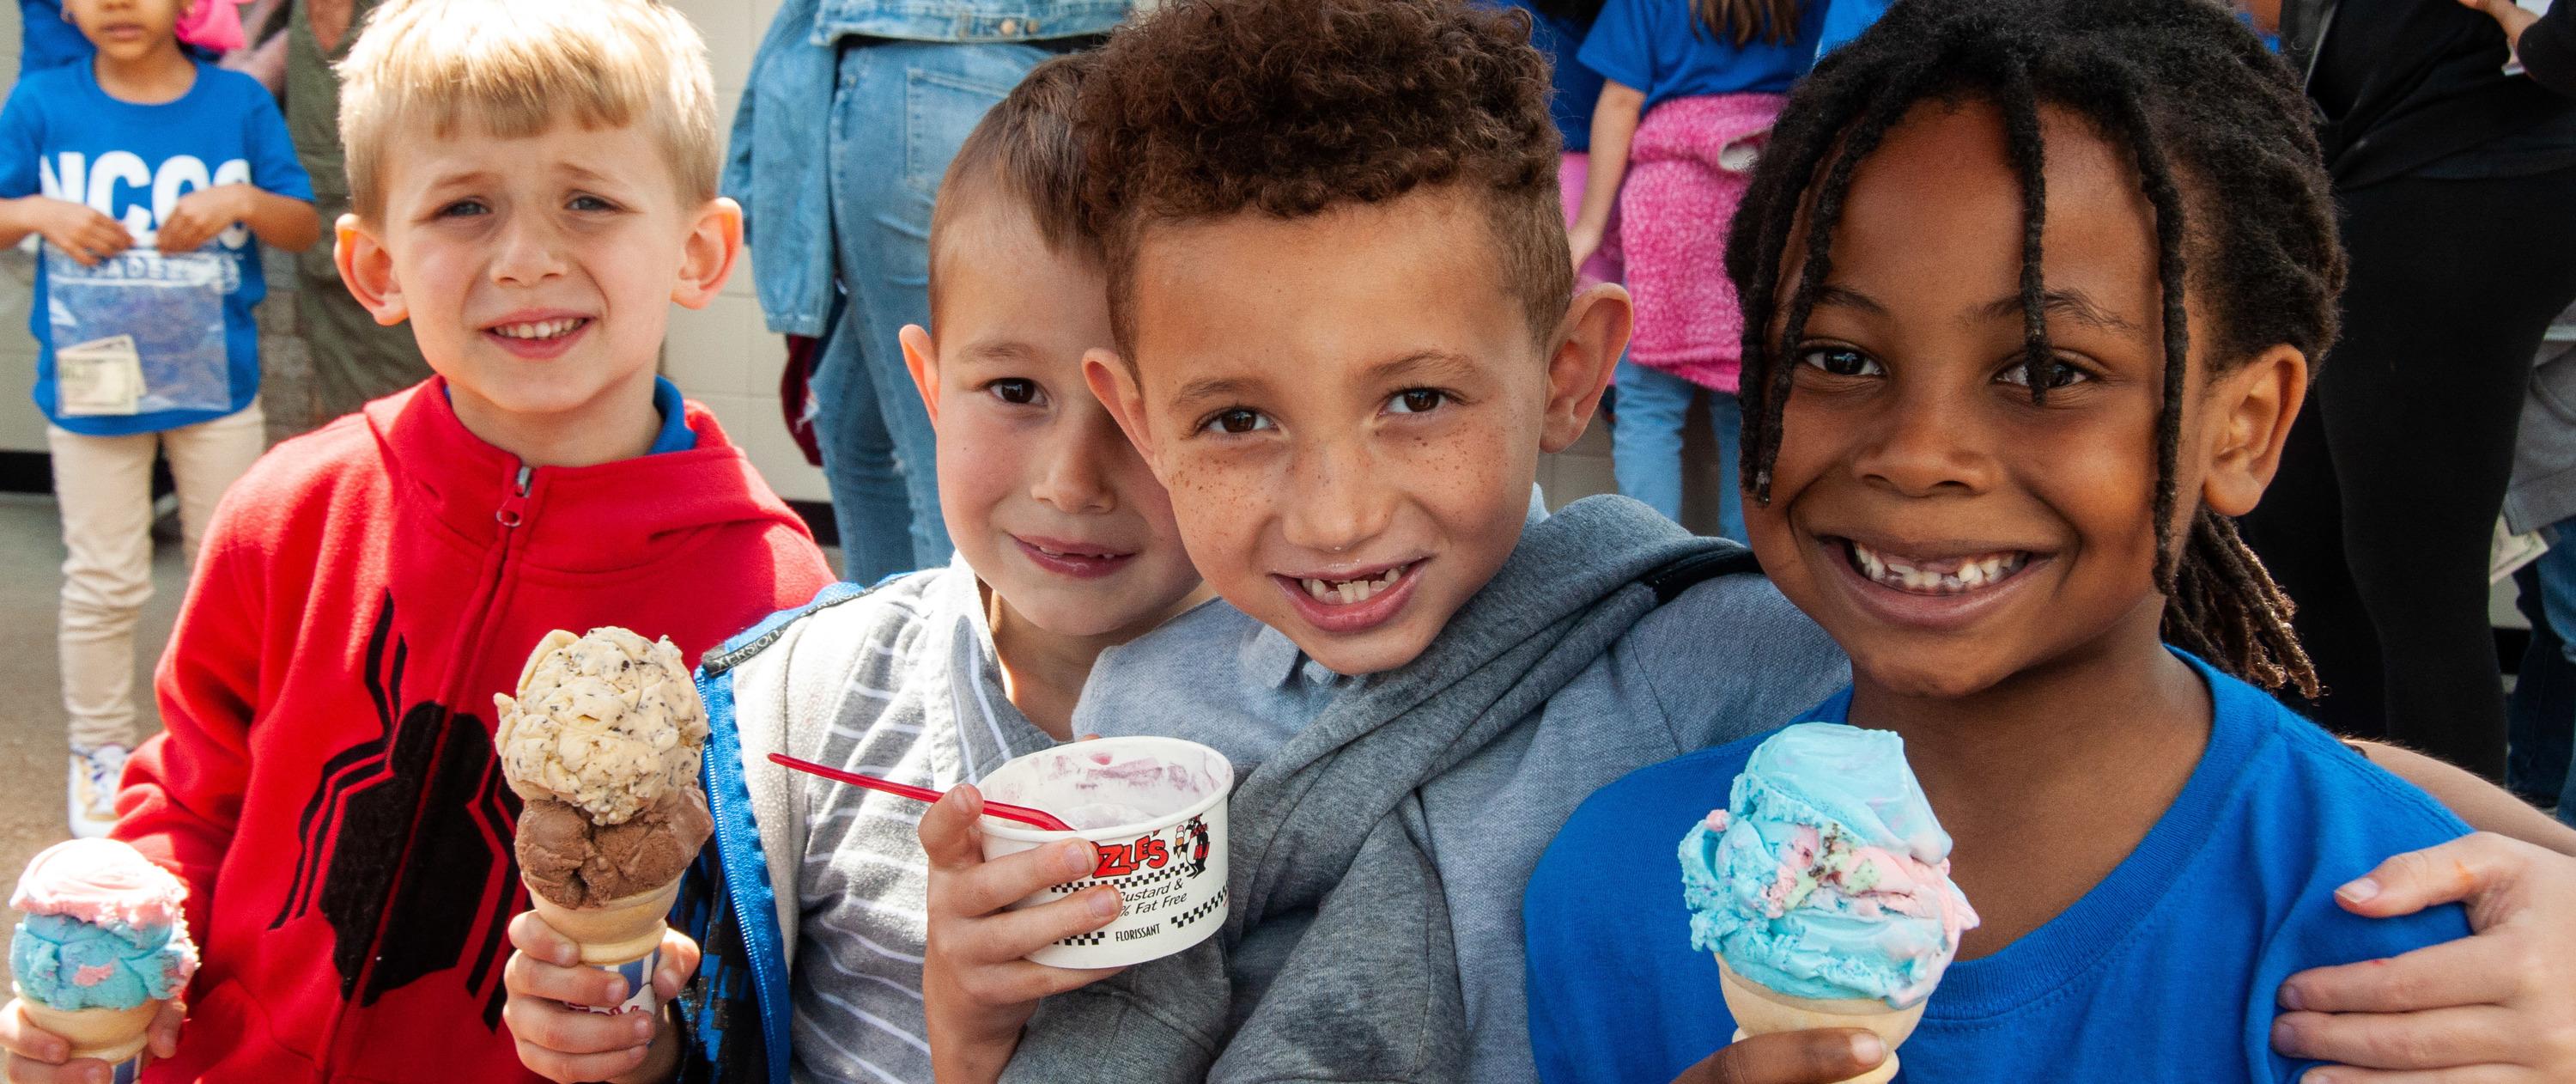 Kids with ice-cream